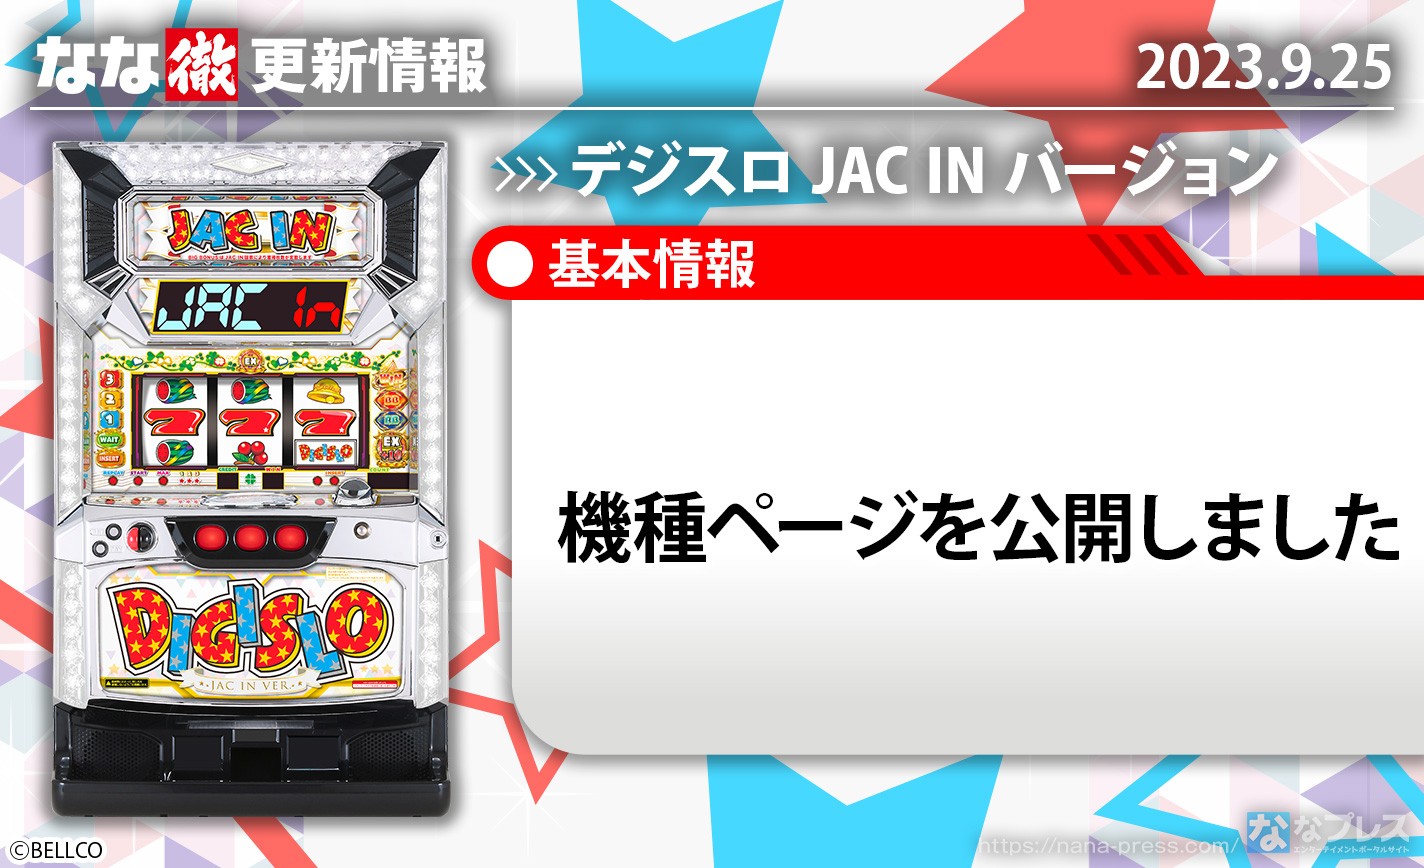 【デジスロ JAC IN バージョン】機種ページを公開しました。【9月25日解析情報更新】 eyecatch-image